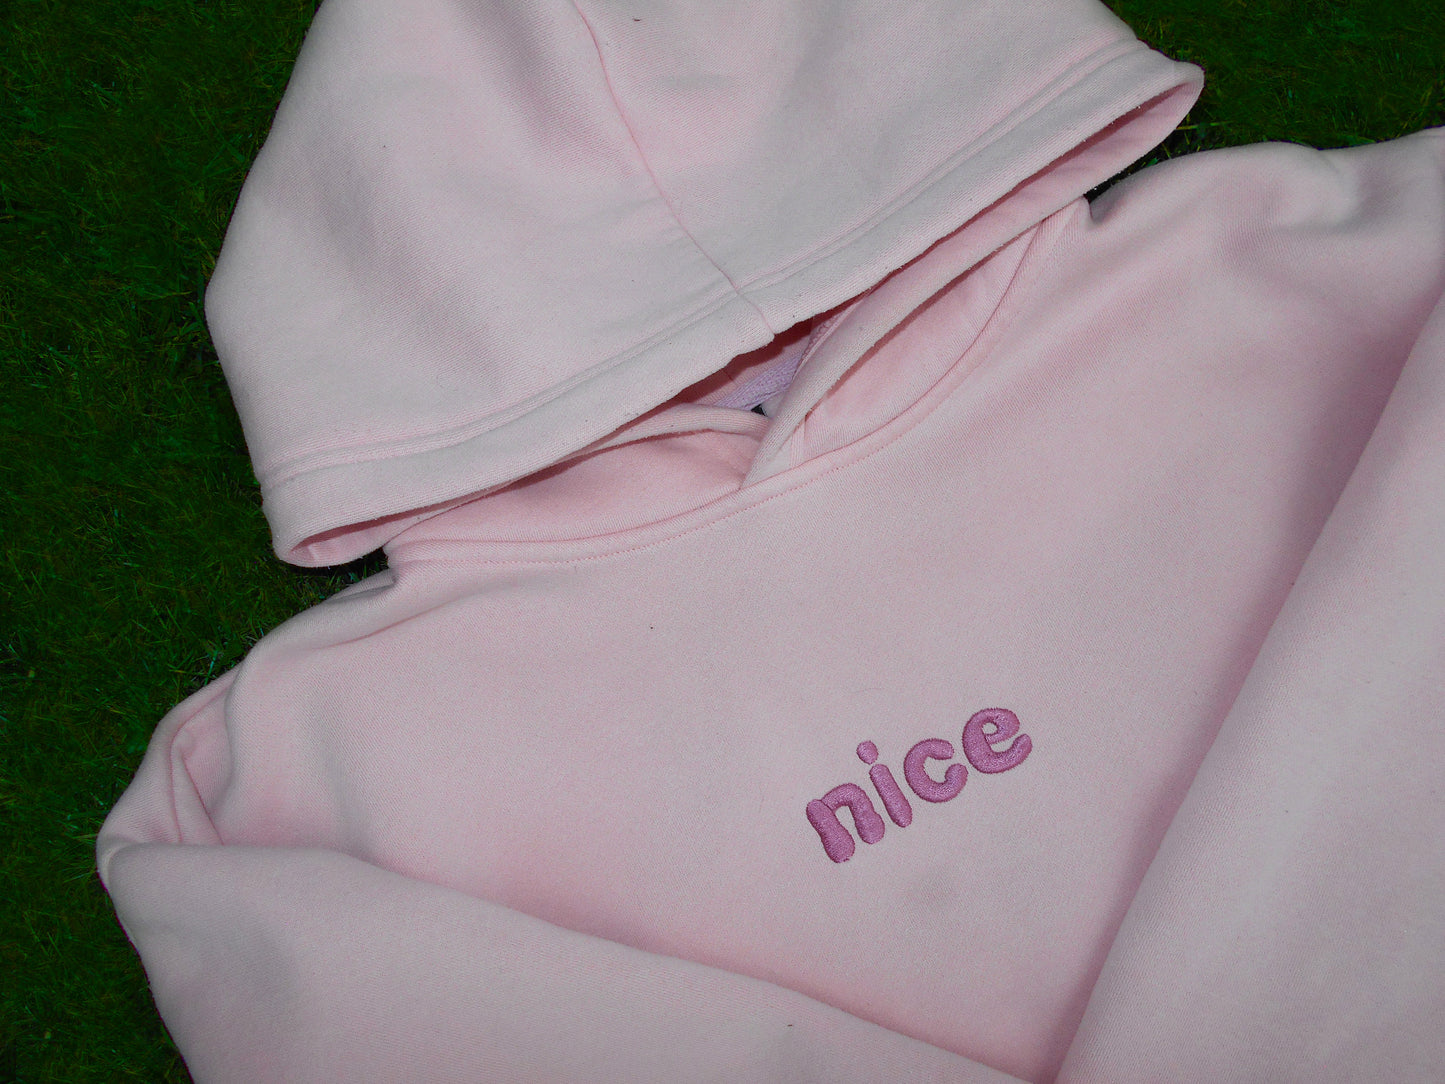 "nice" hoodie